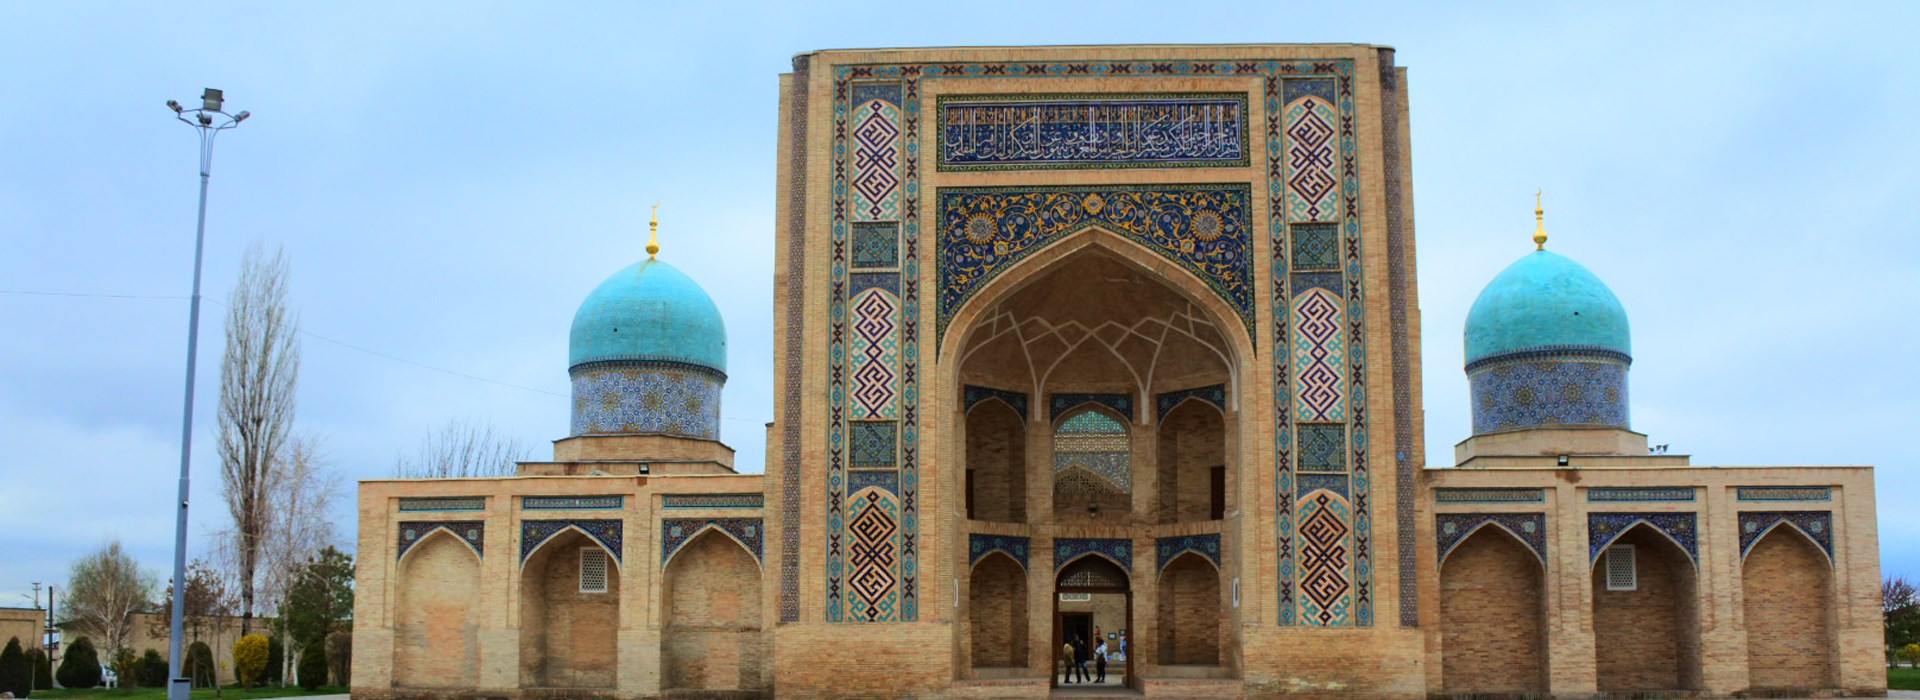 tachkent ouzbekistan circuit célibataire solos